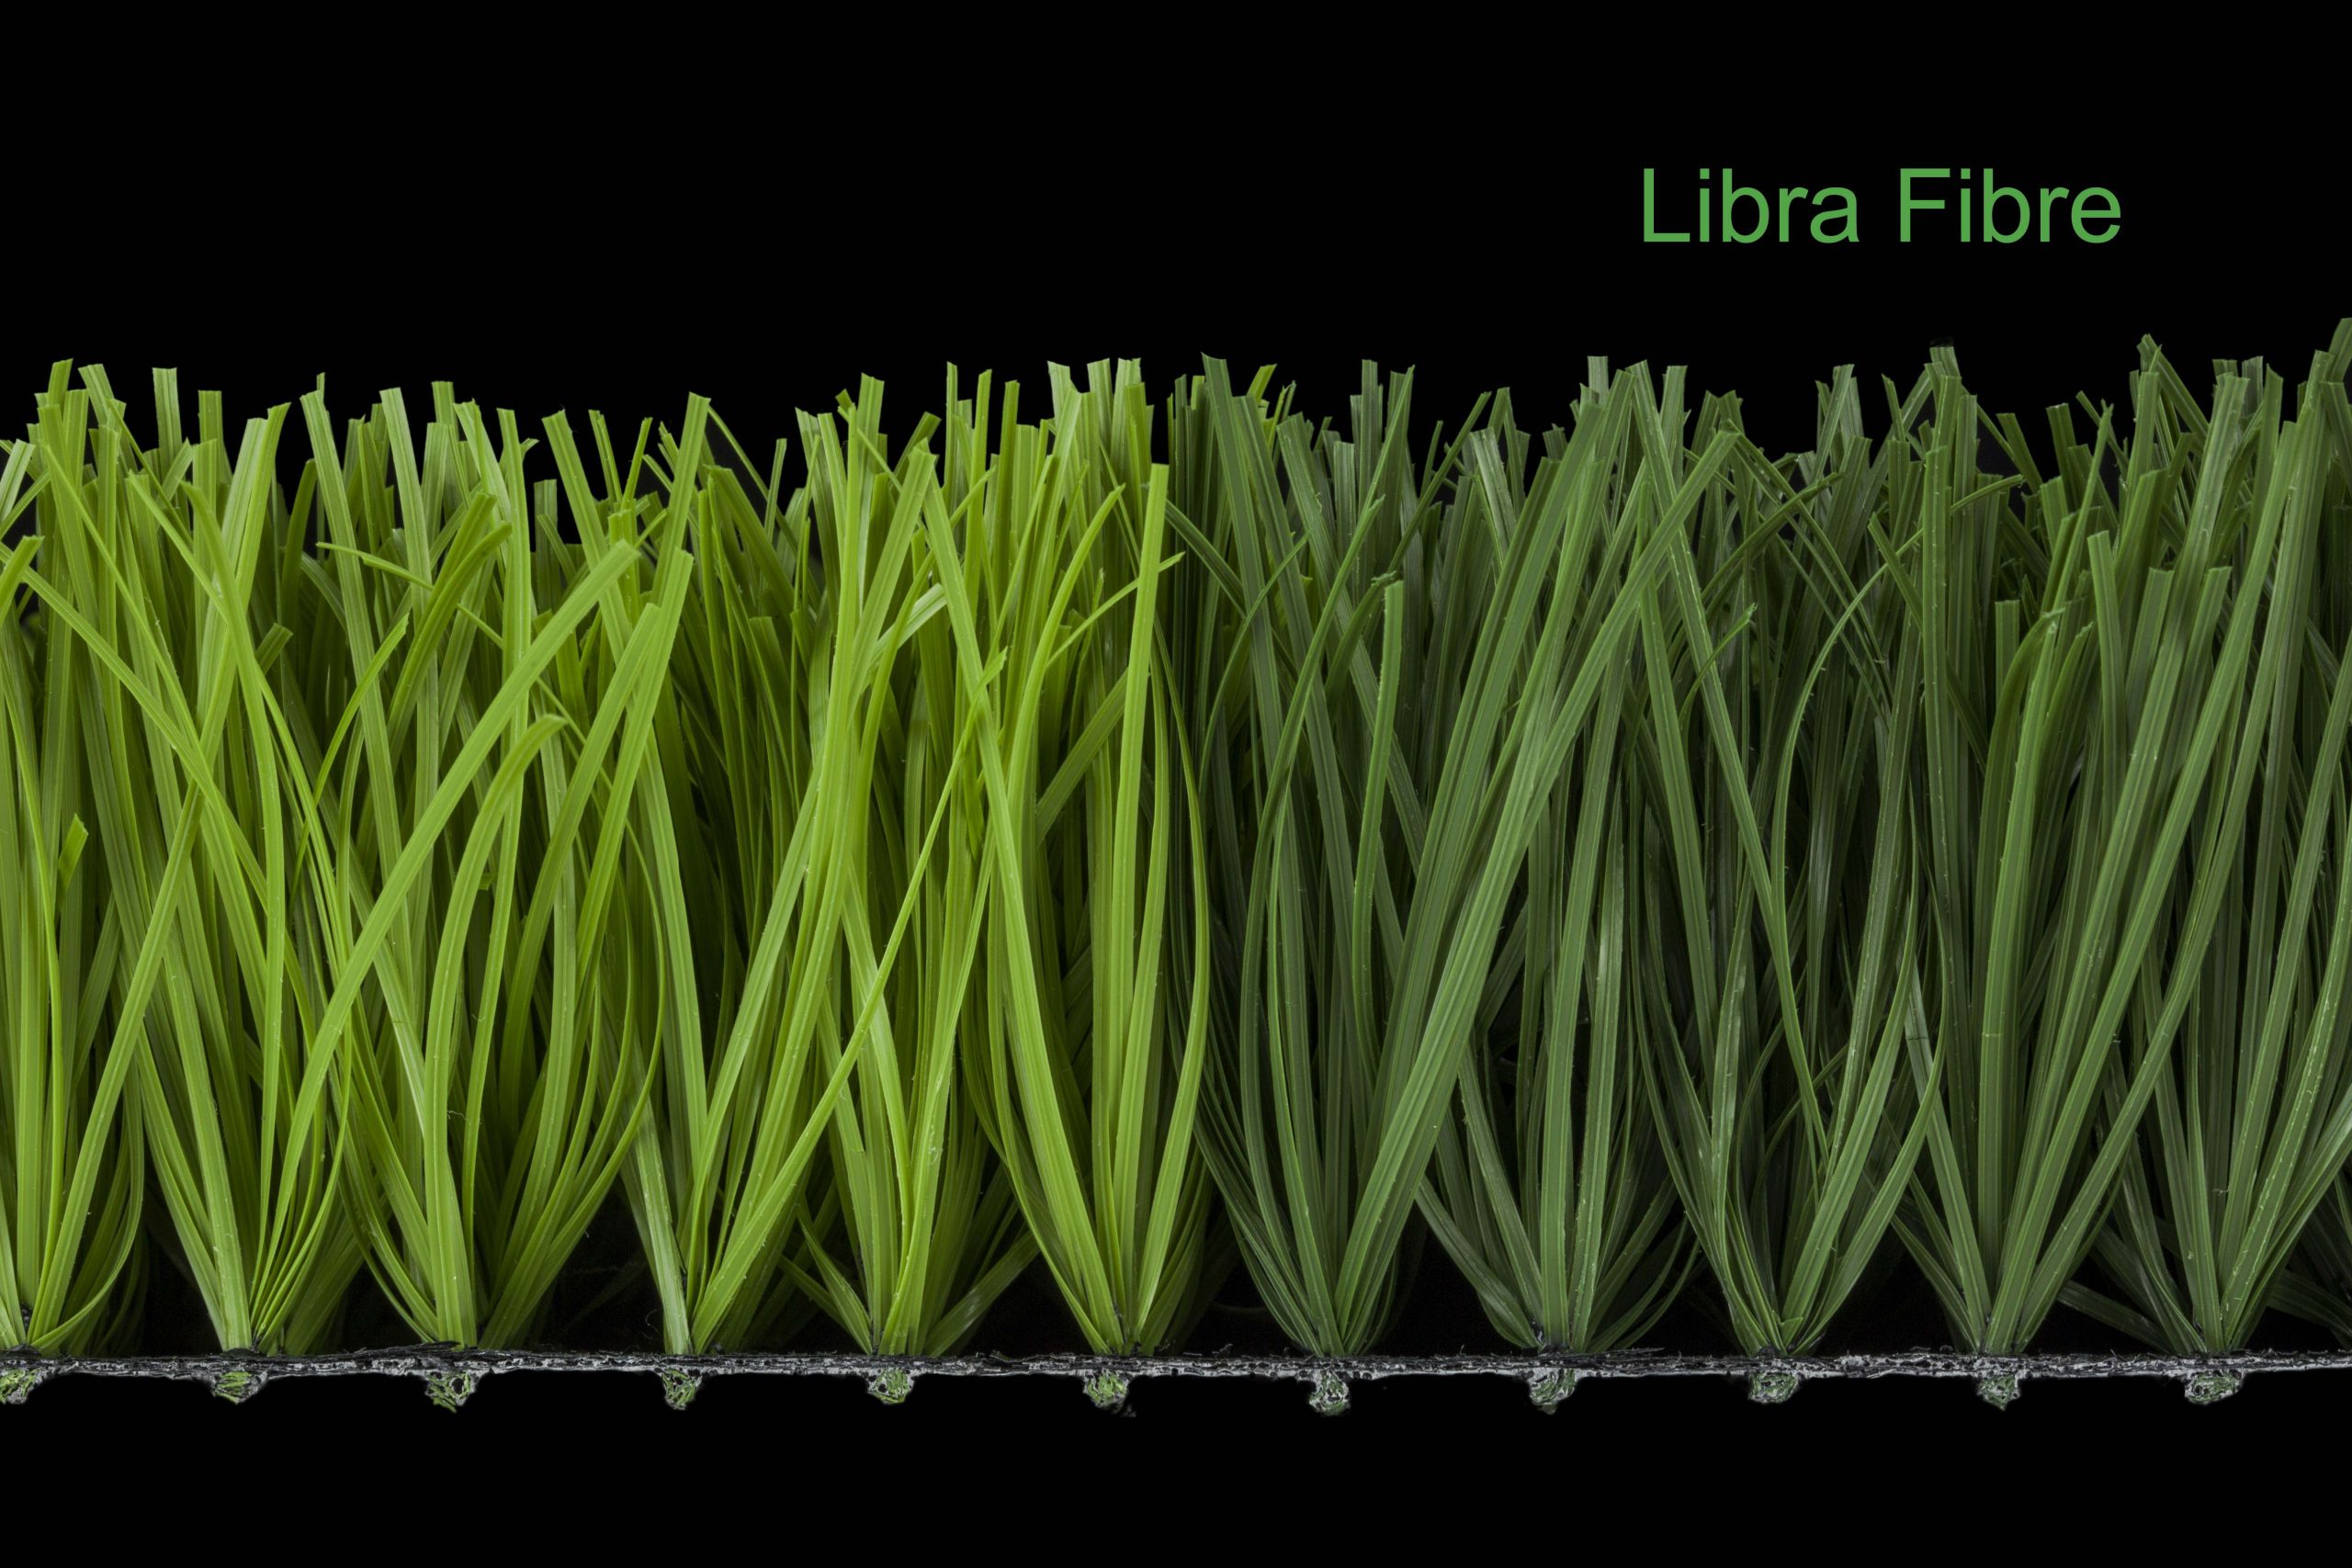 ccgrass artificial grass manufacturer product Libra